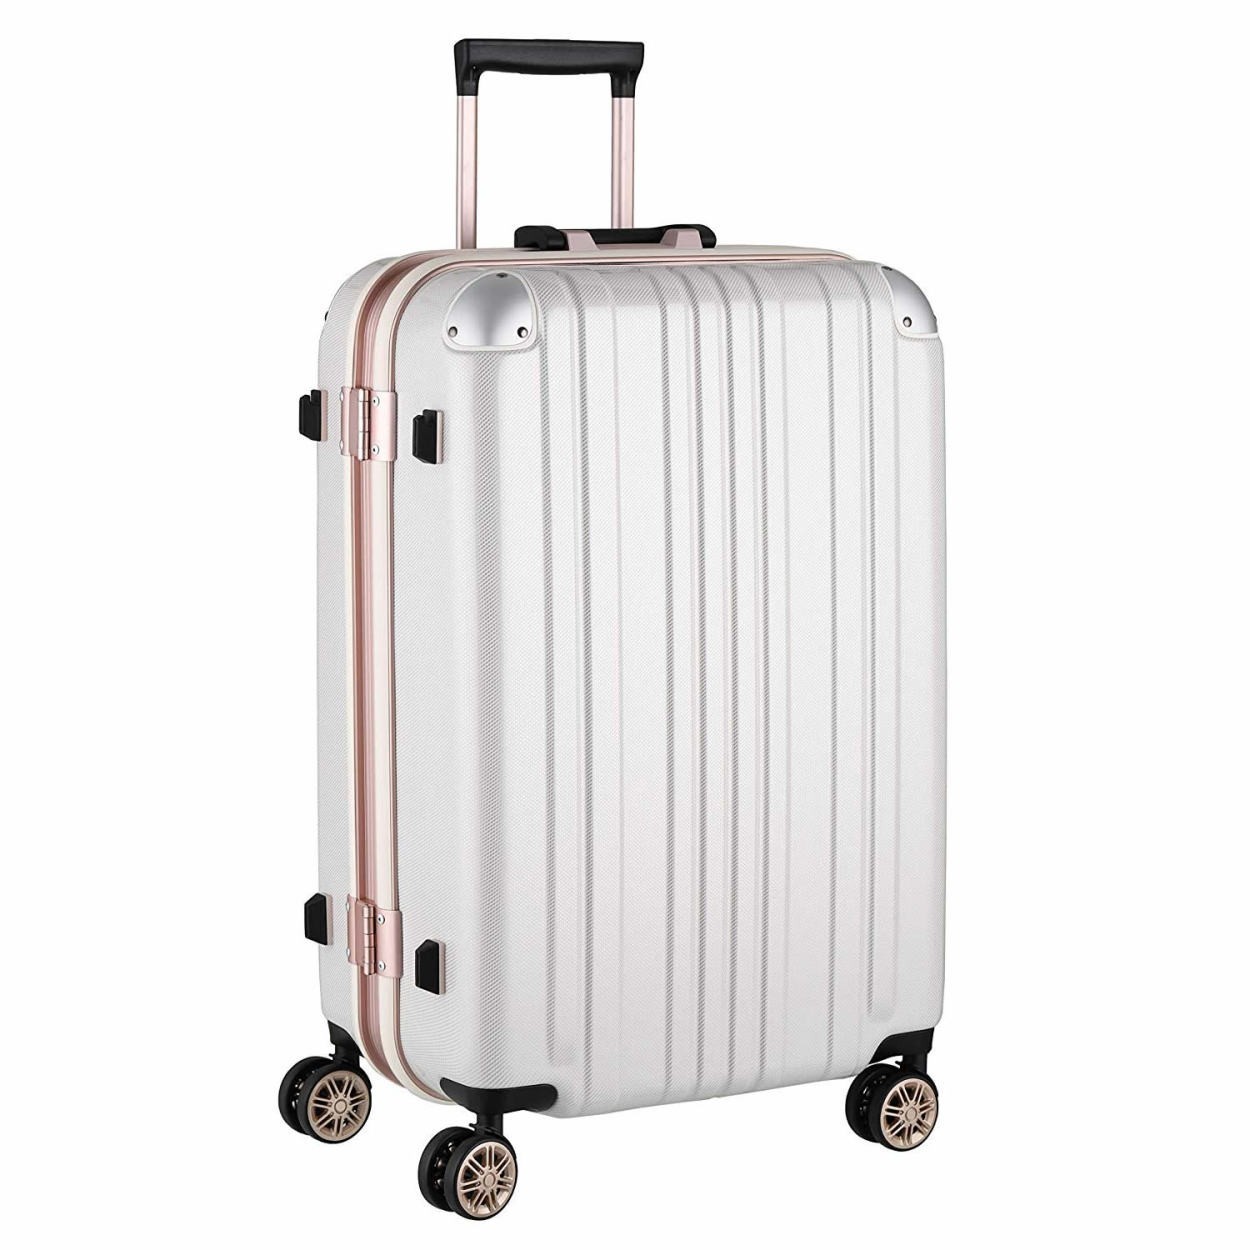 スーツケース キャリーバッグ トランクケース レディースバッグ Mサイズ 中型 超軽量 おしゃれ かわいい キャリーケース キャリーバッグ  5122-62